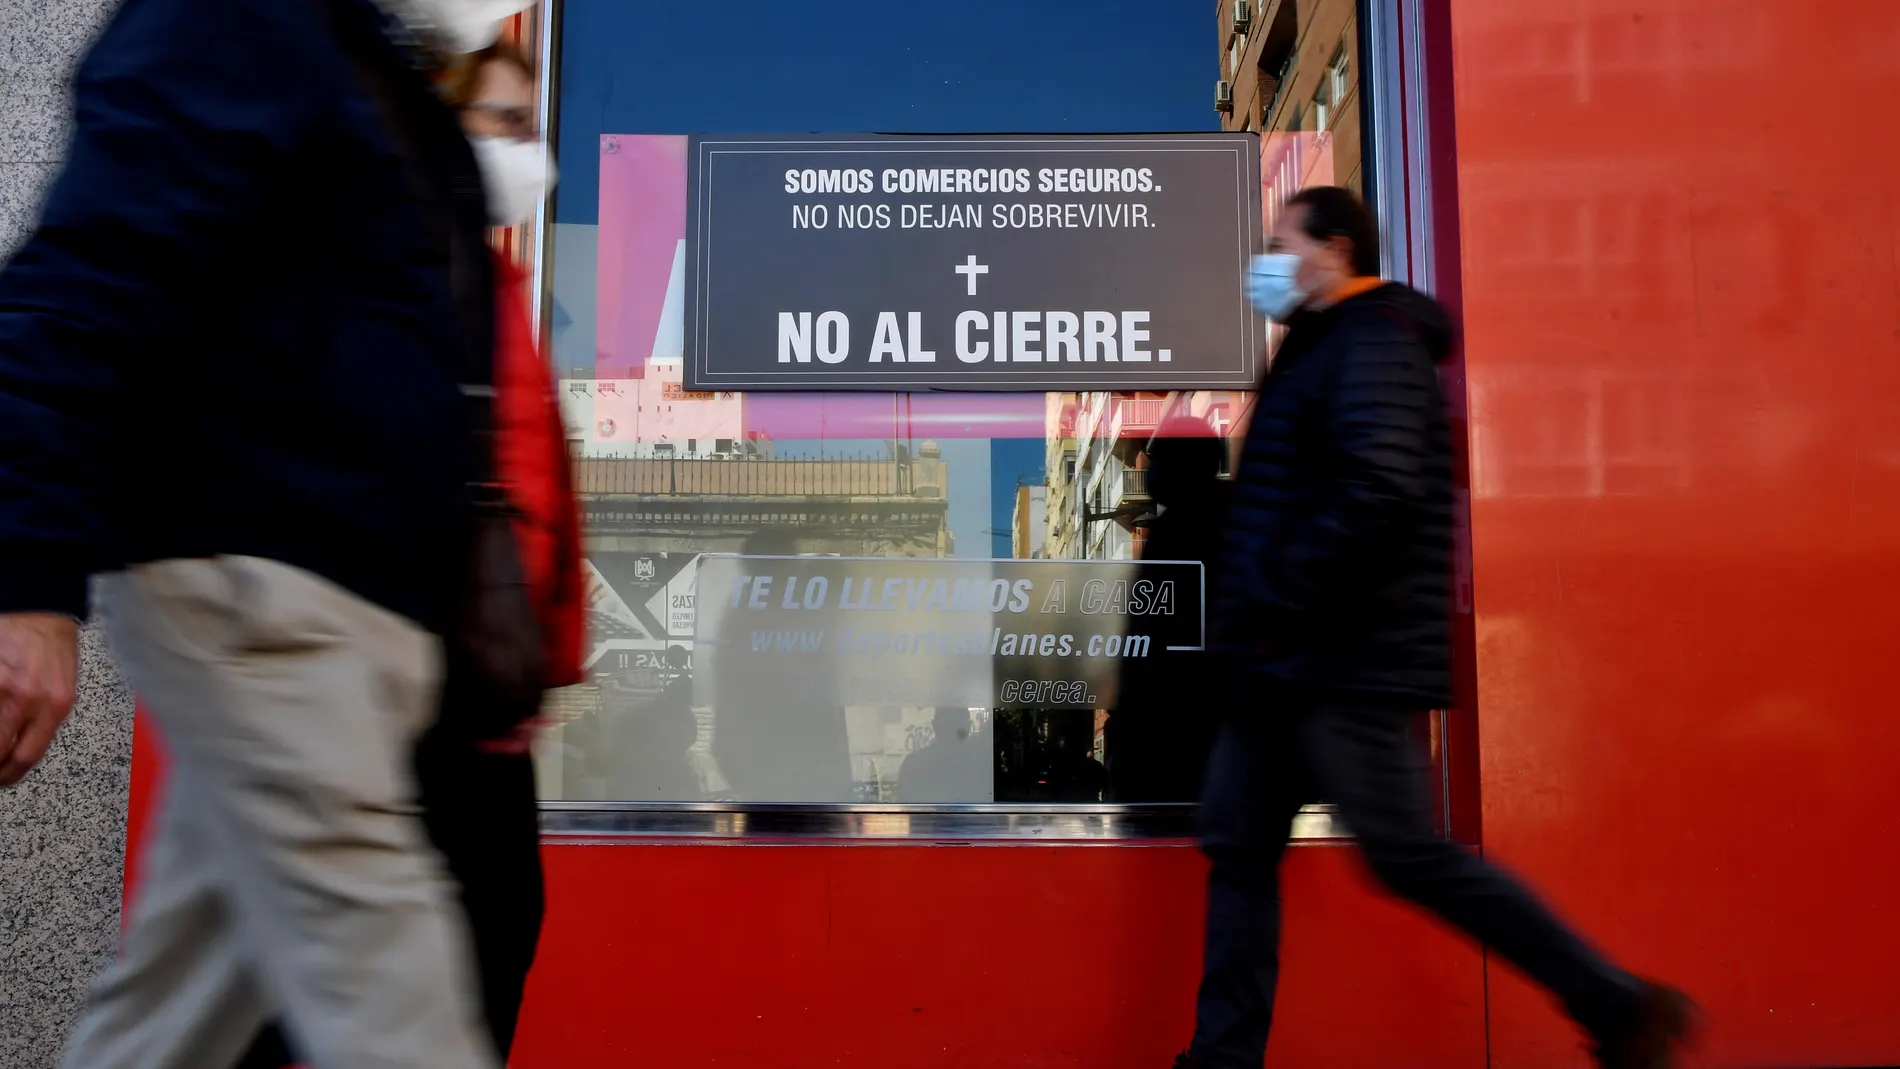 Un escaparate de un comercio del centro de Almería muestra unos carteles en protesta por la situación en la que se encuentran debido al cierre de los establecimientos no esenciales provocado por la tasa de contagios de la Covid-19 en la ciudad de Almería